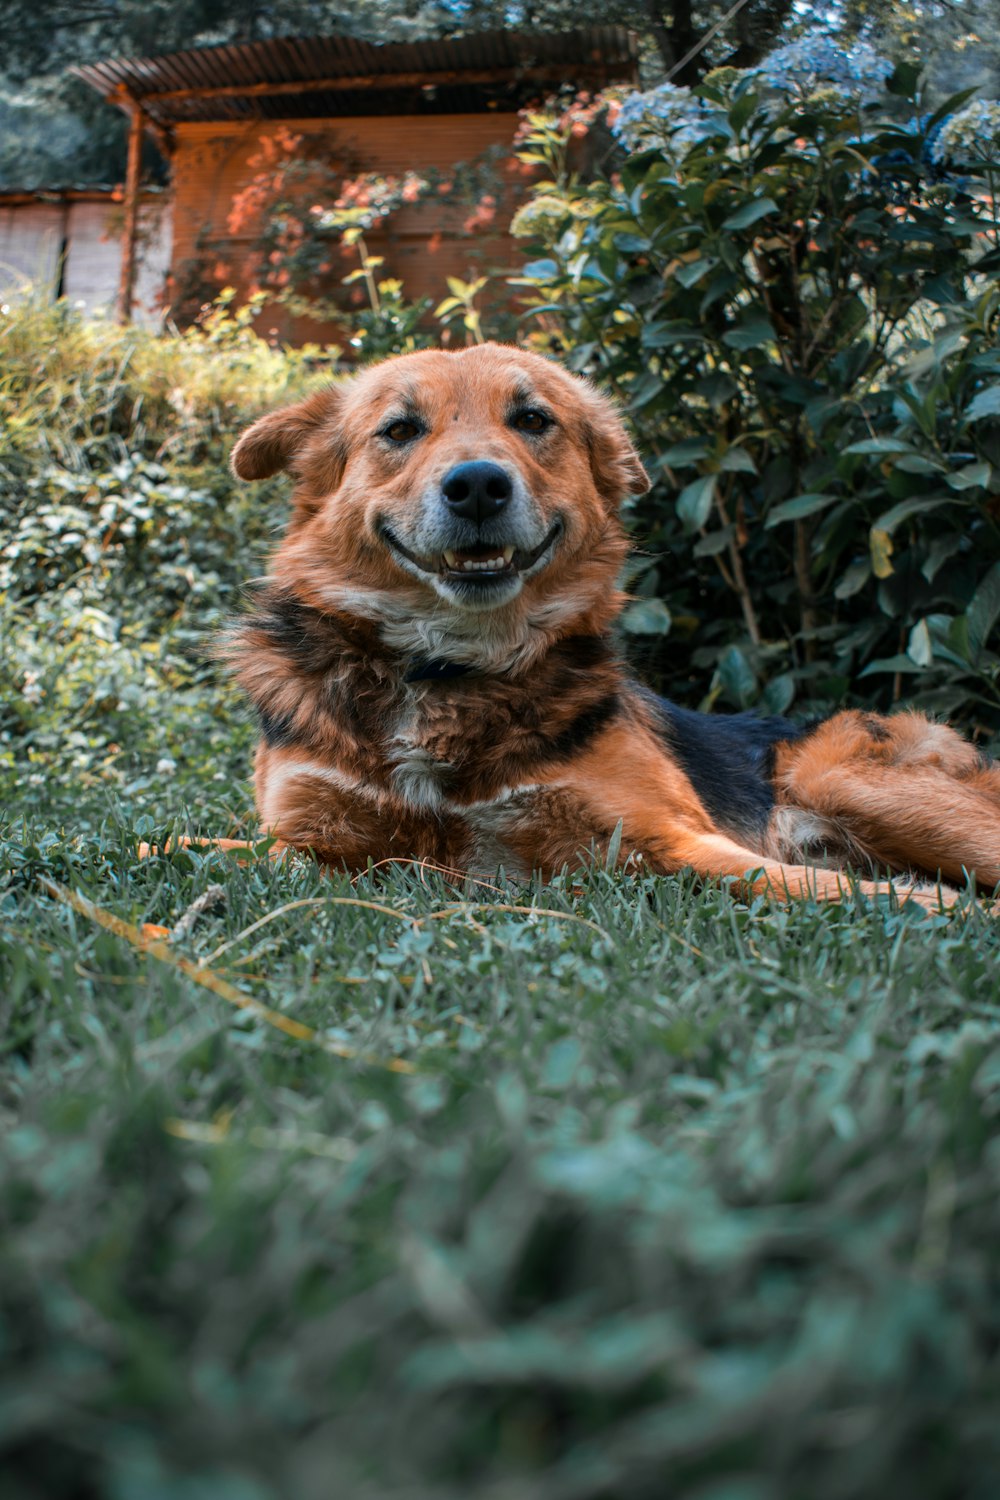 cane a pelo corto marrone e nero sdraiato sull'erba verde durante il giorno